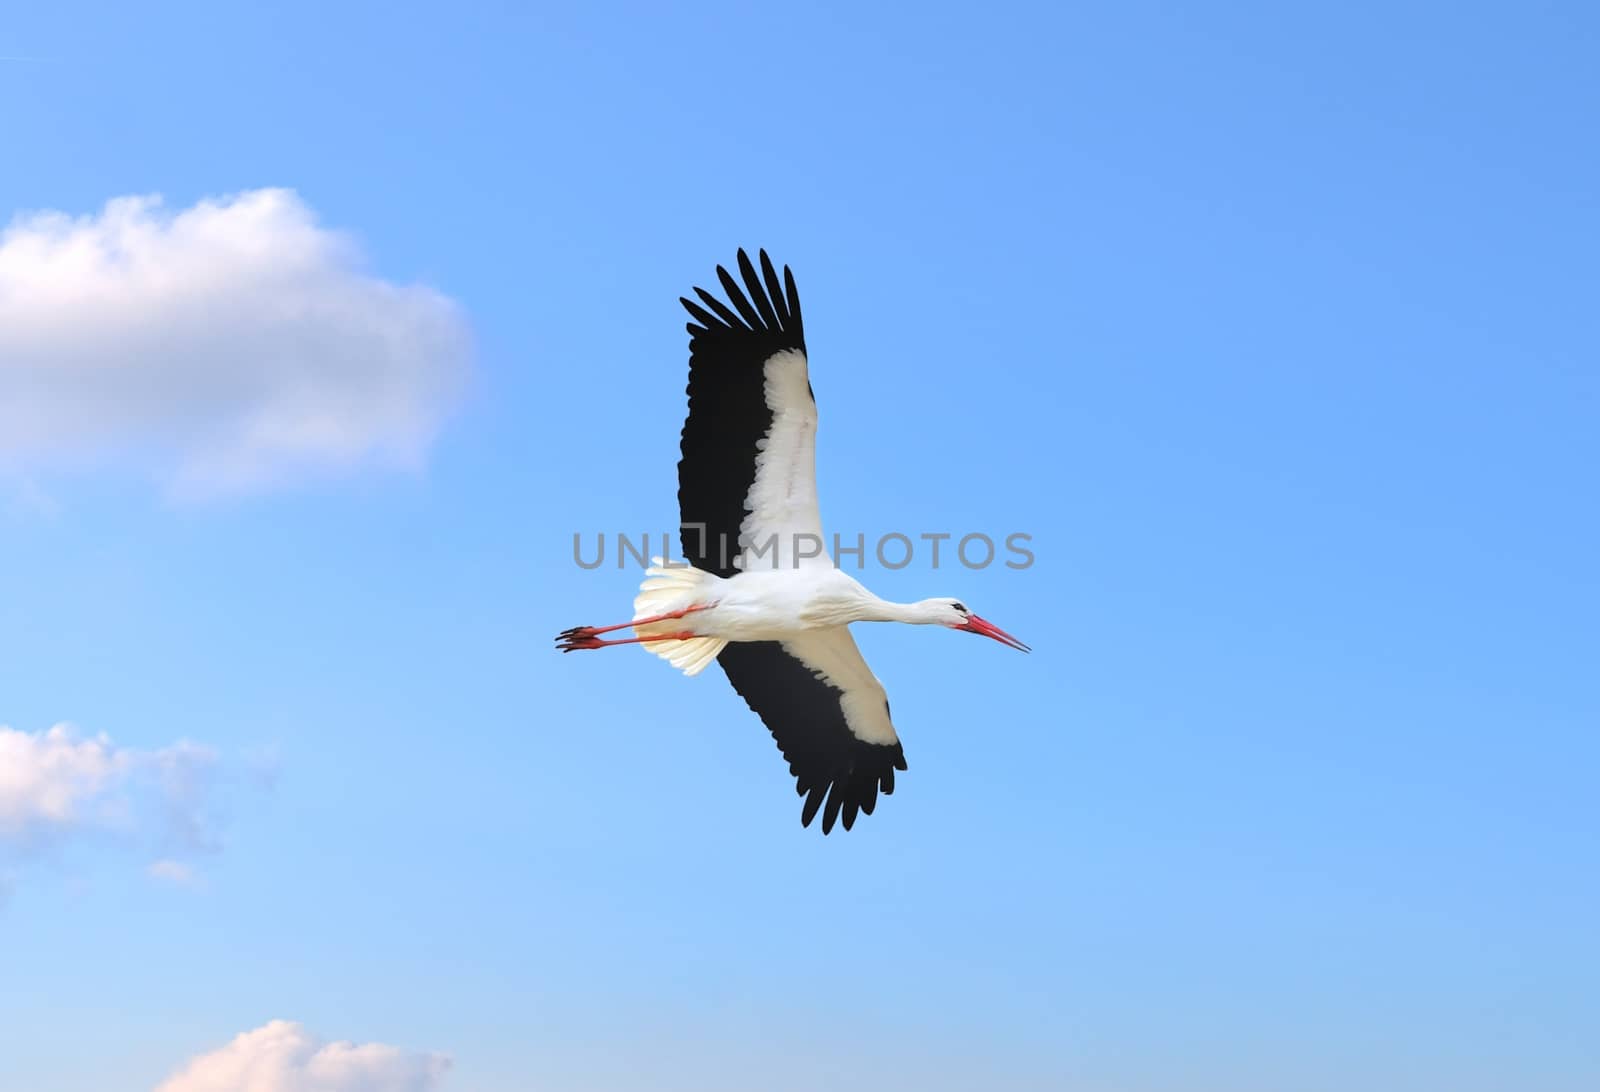 Stork in flight on a blue sky